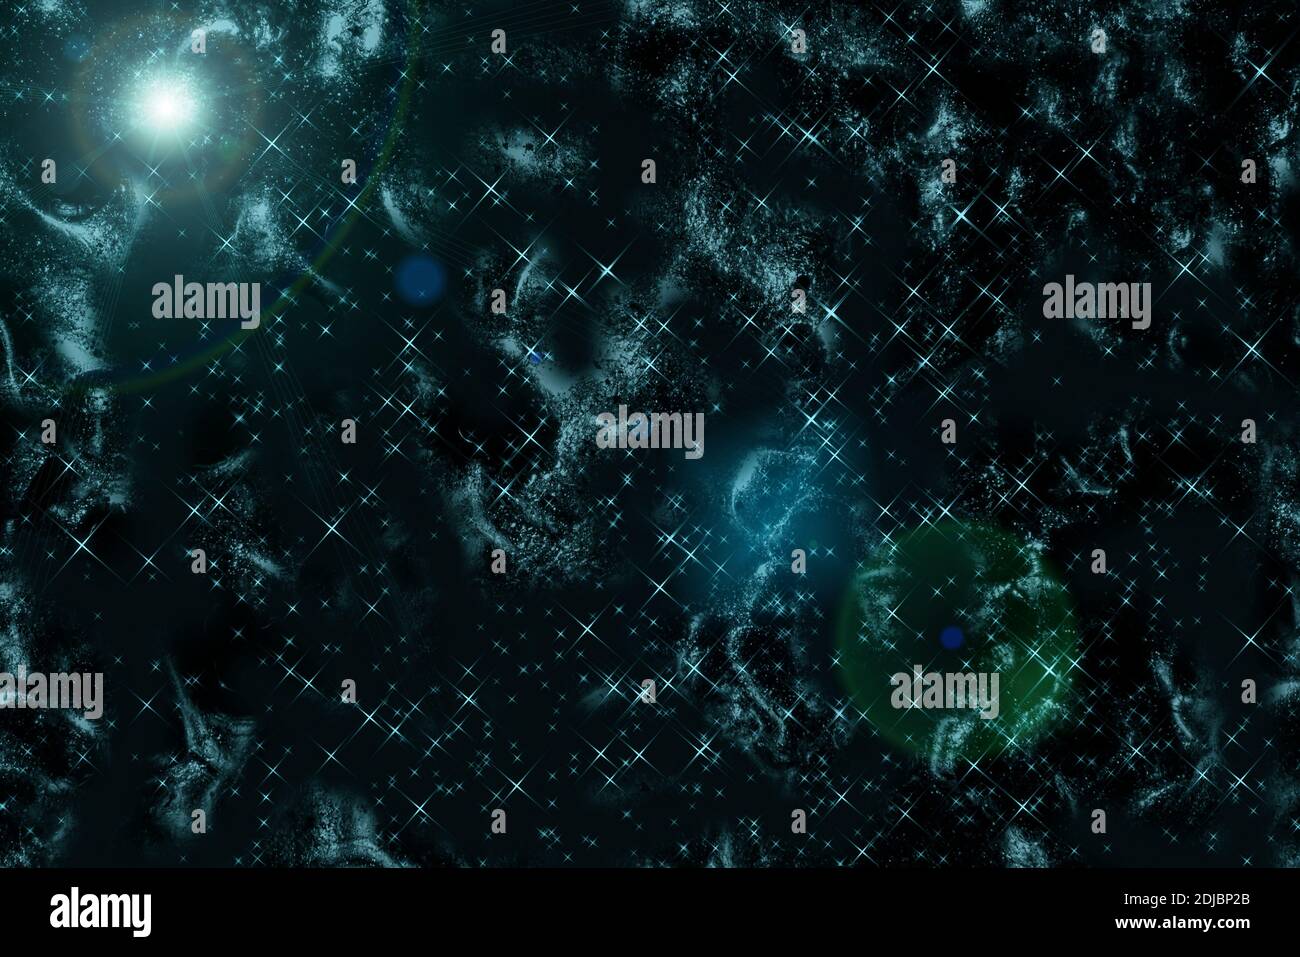 Abstrakter Raumhintergrund mit Sternen, Nebel und Wolkenformationen im tiefen Raum Stockfoto